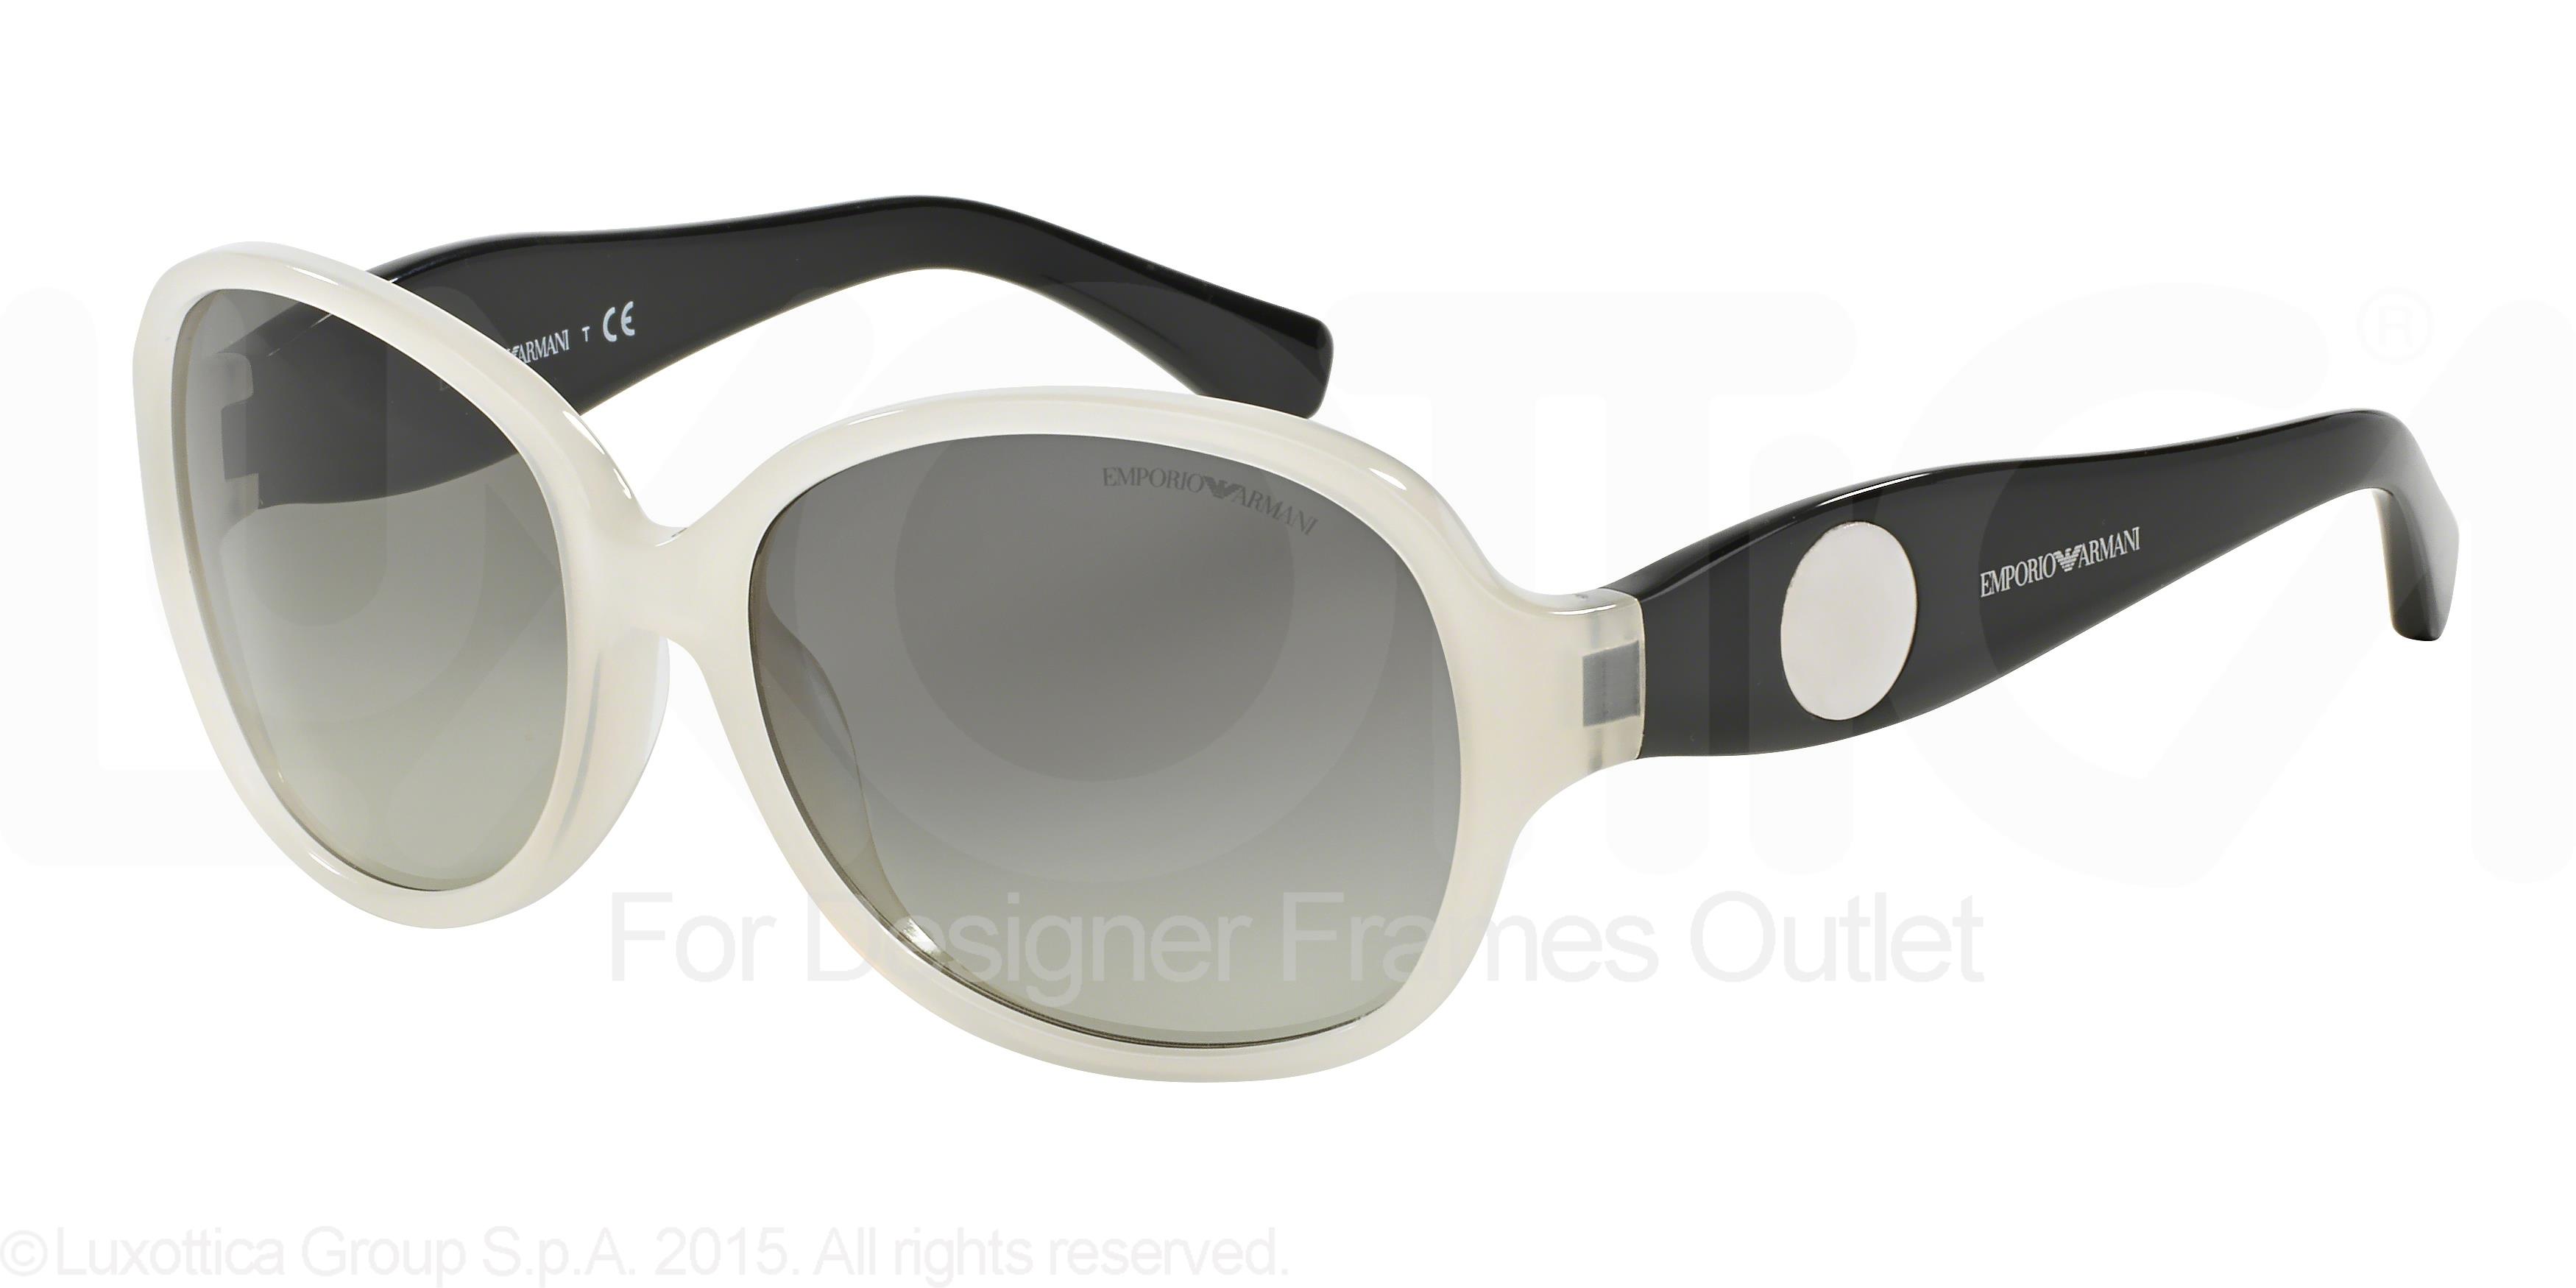 Picture of Emporio Armani Sunglasses EA4040